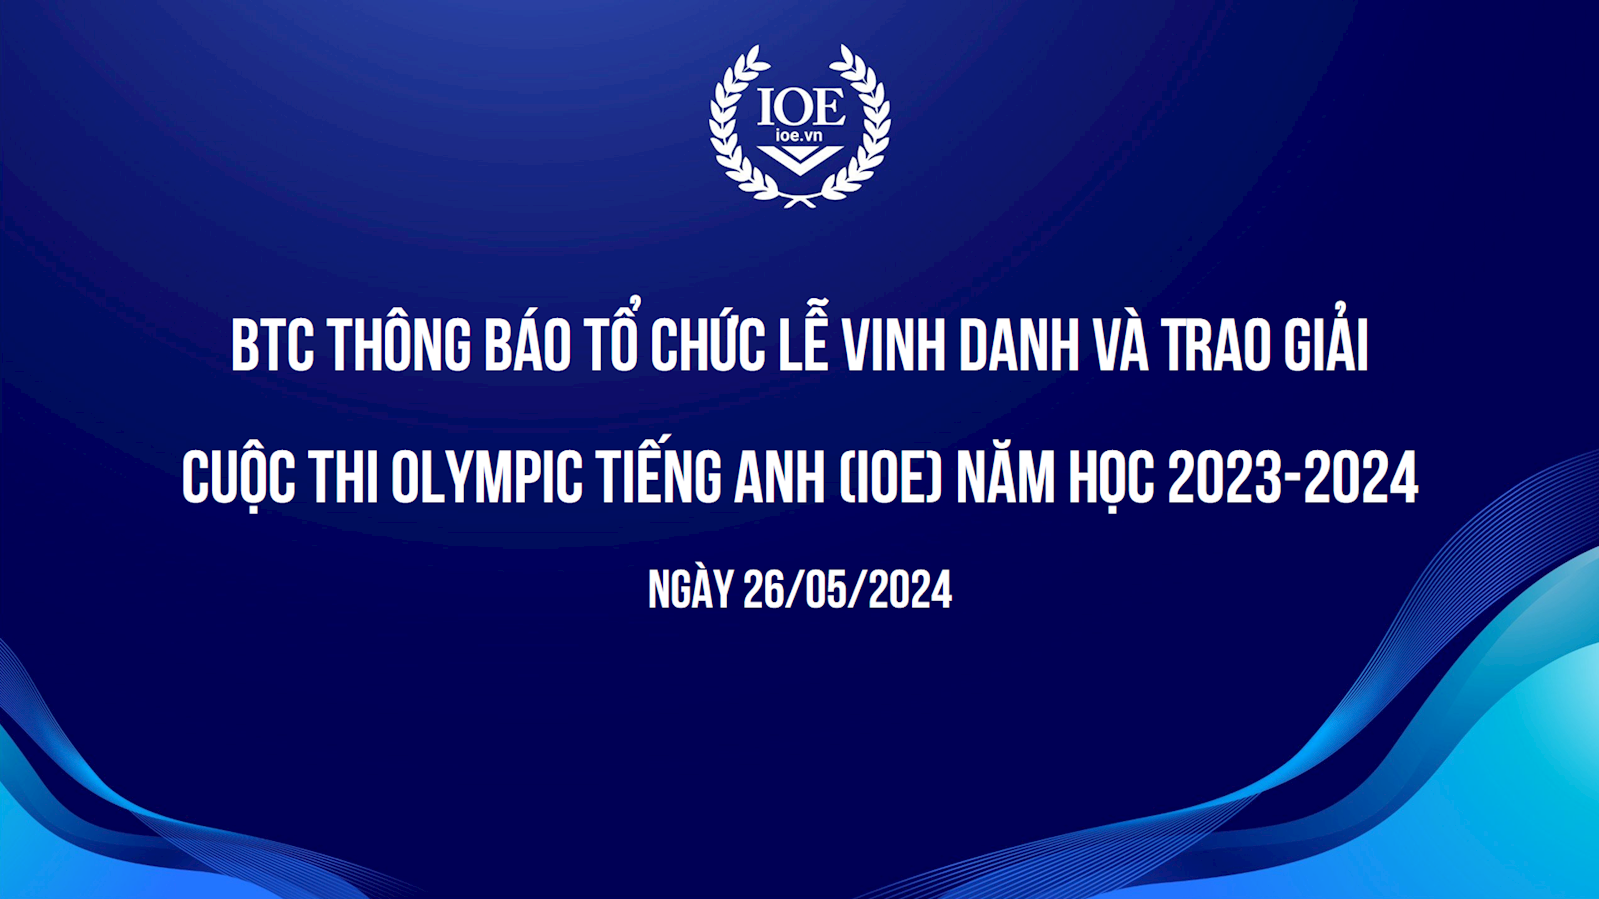 BTC thông báo tổ chức Lễ Vinh danh và Trao giải cuộc thi Olympic Tiếng Anh (IOE) năm học 2023-2024